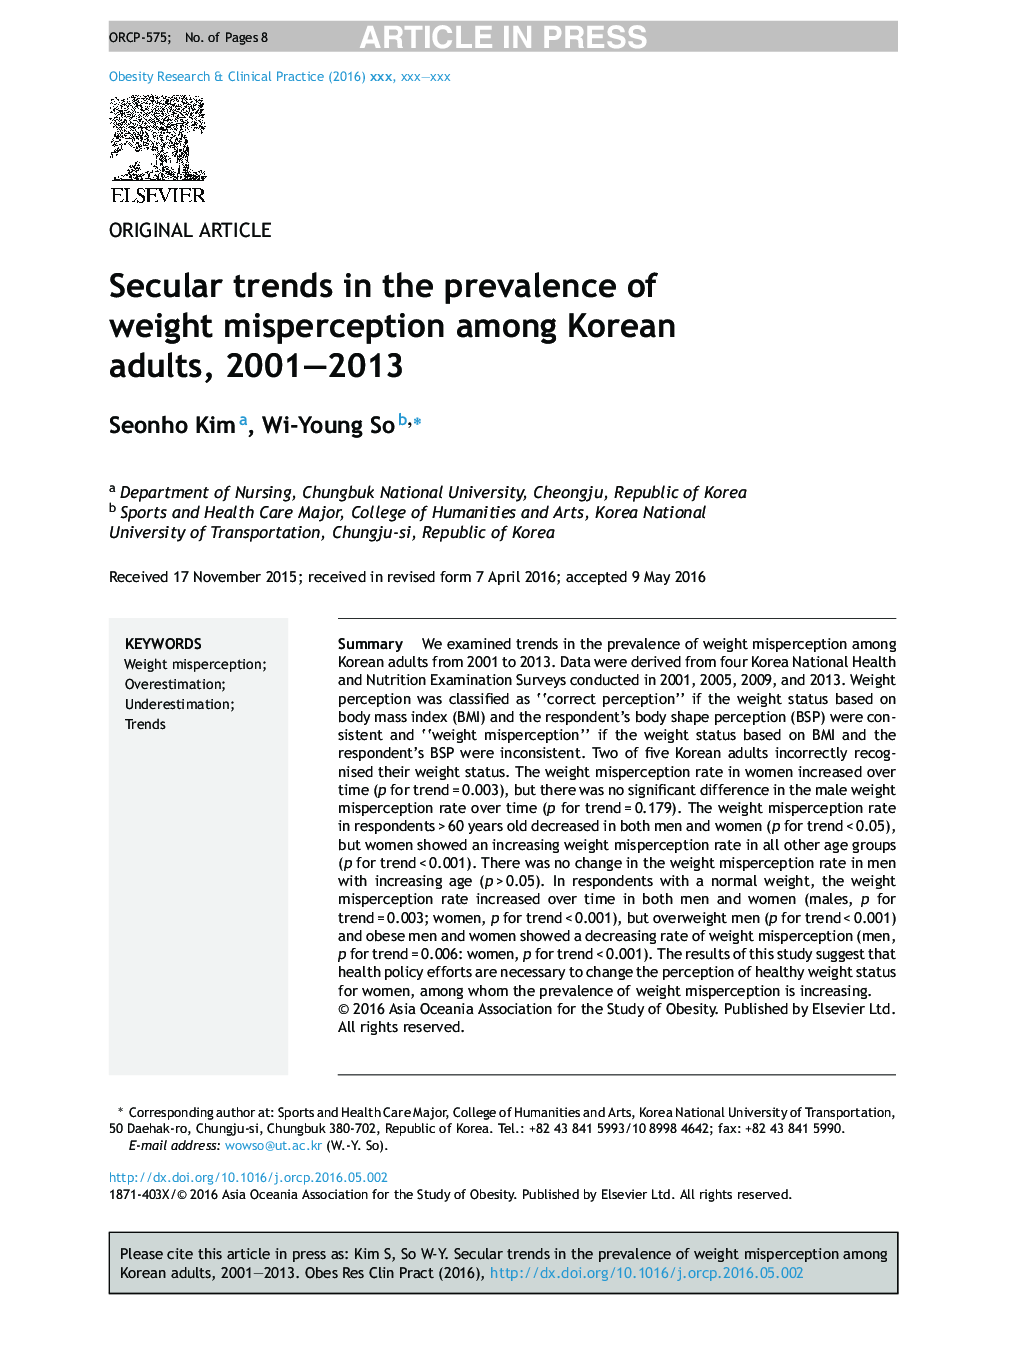 روند صلح در شیوع اشتباه وزن در میان بزرگسالان کره ای، 2001-2013 